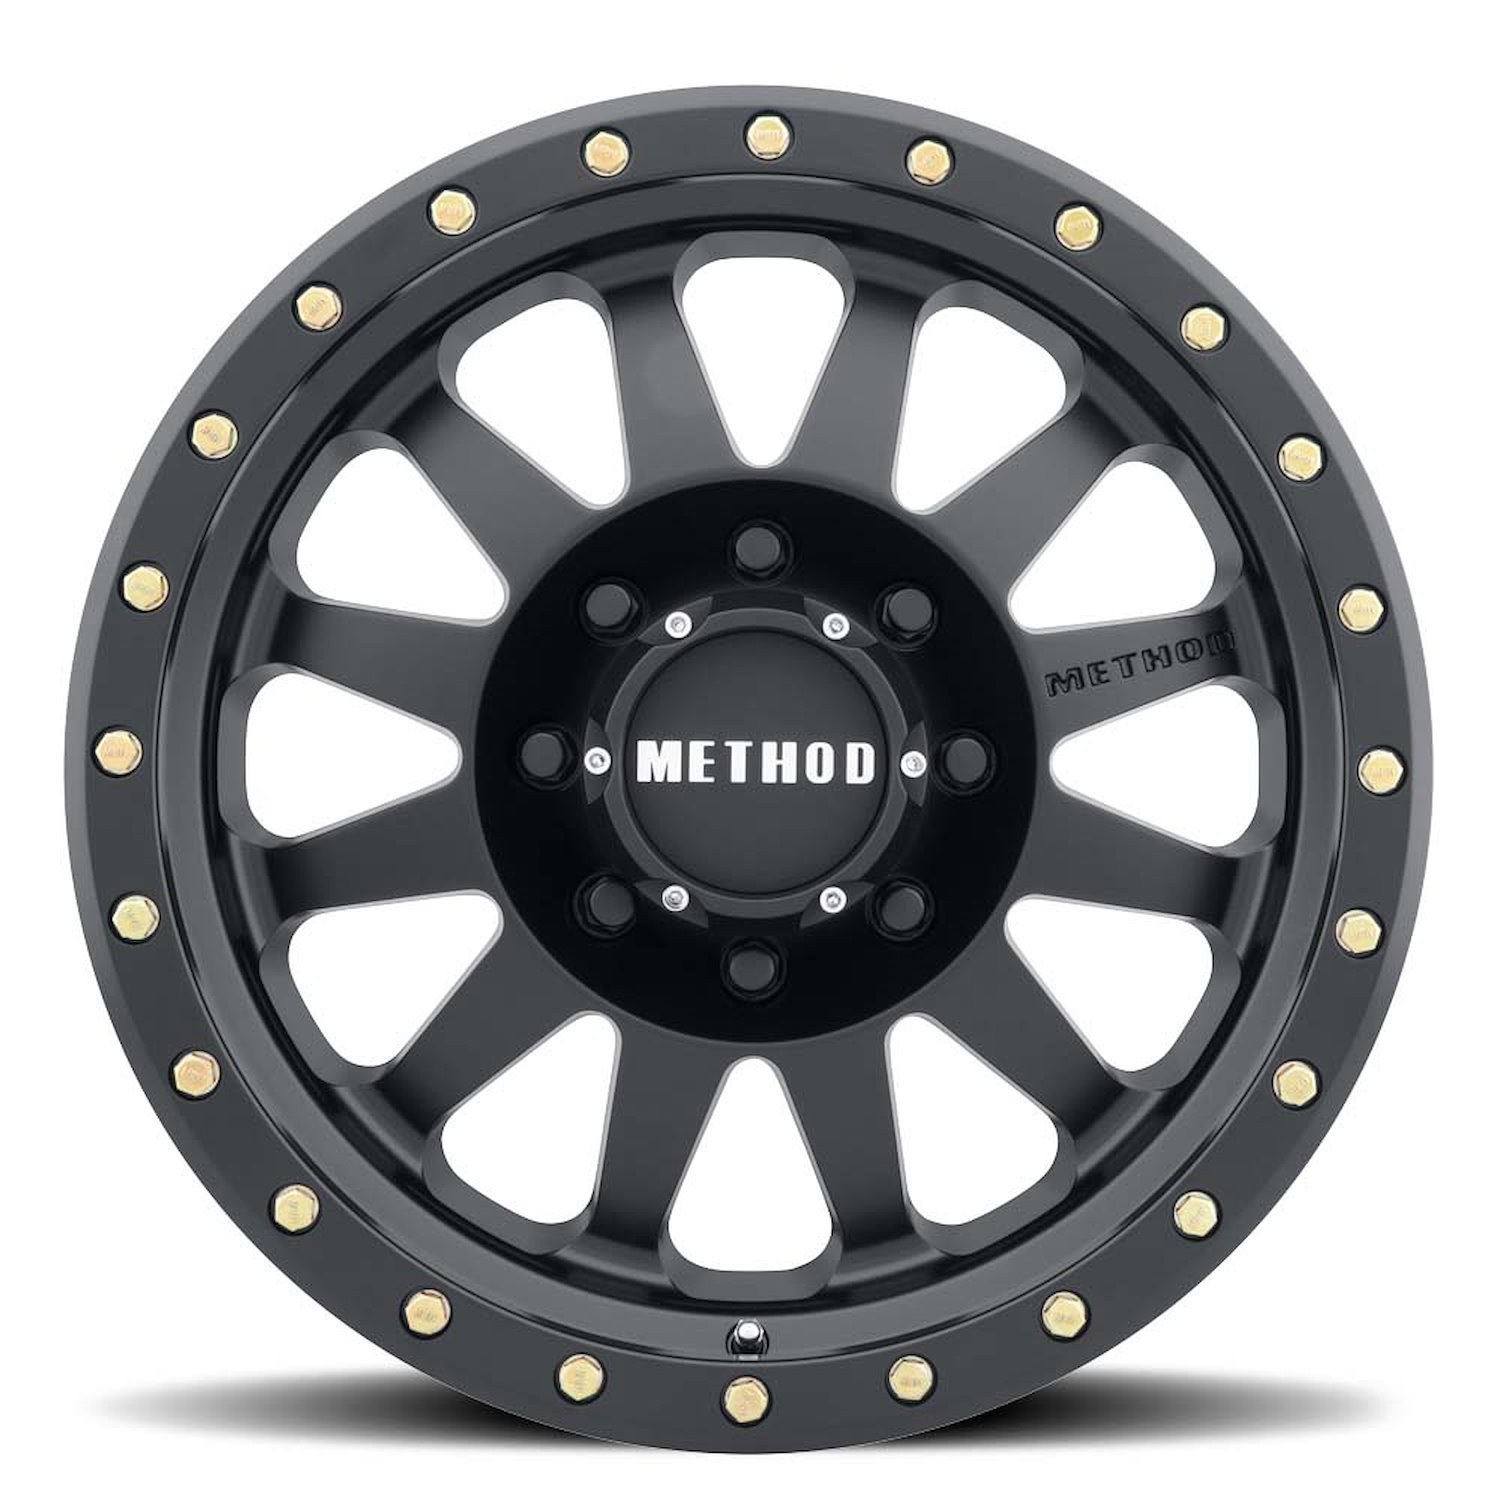 MR30478587500 STREET MR304 Double Standard Wheel [Size: 17" x 8.5"] Matte Black